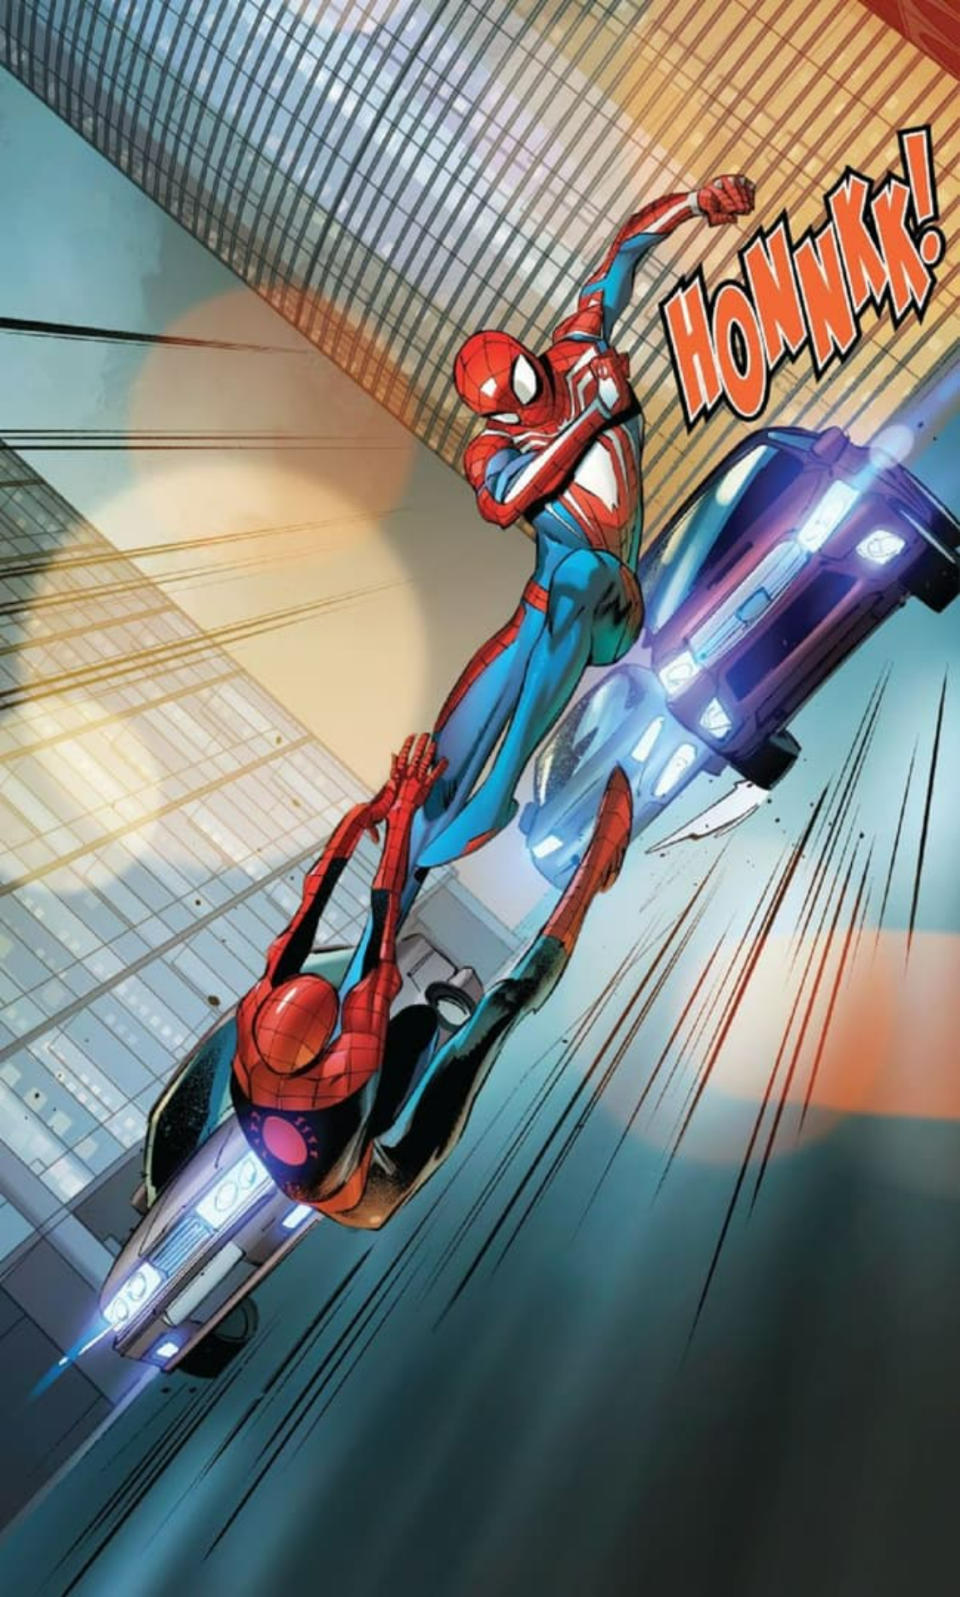 Spider-Man Unlimited #1 interior art